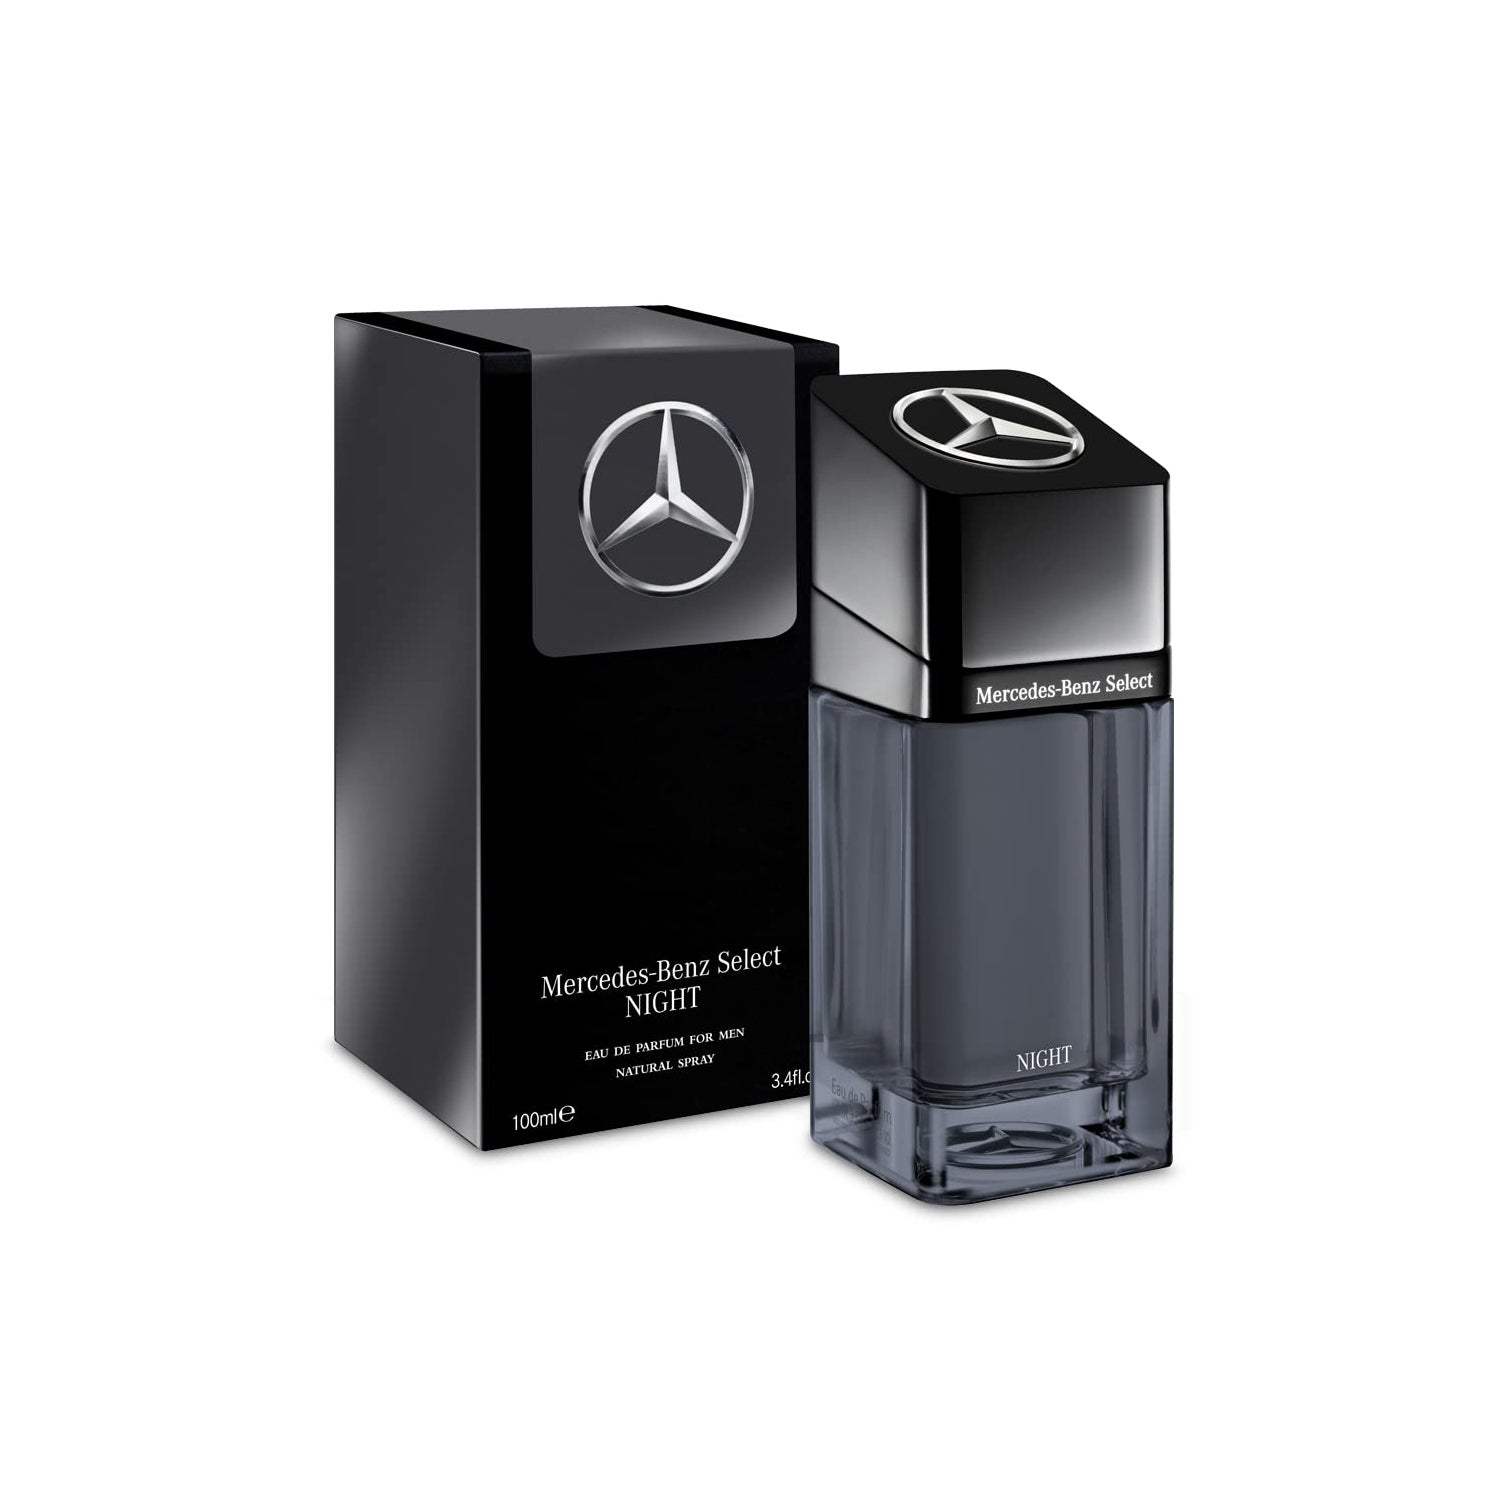 Mercedes Benz Mercedes Benz Select Eau de